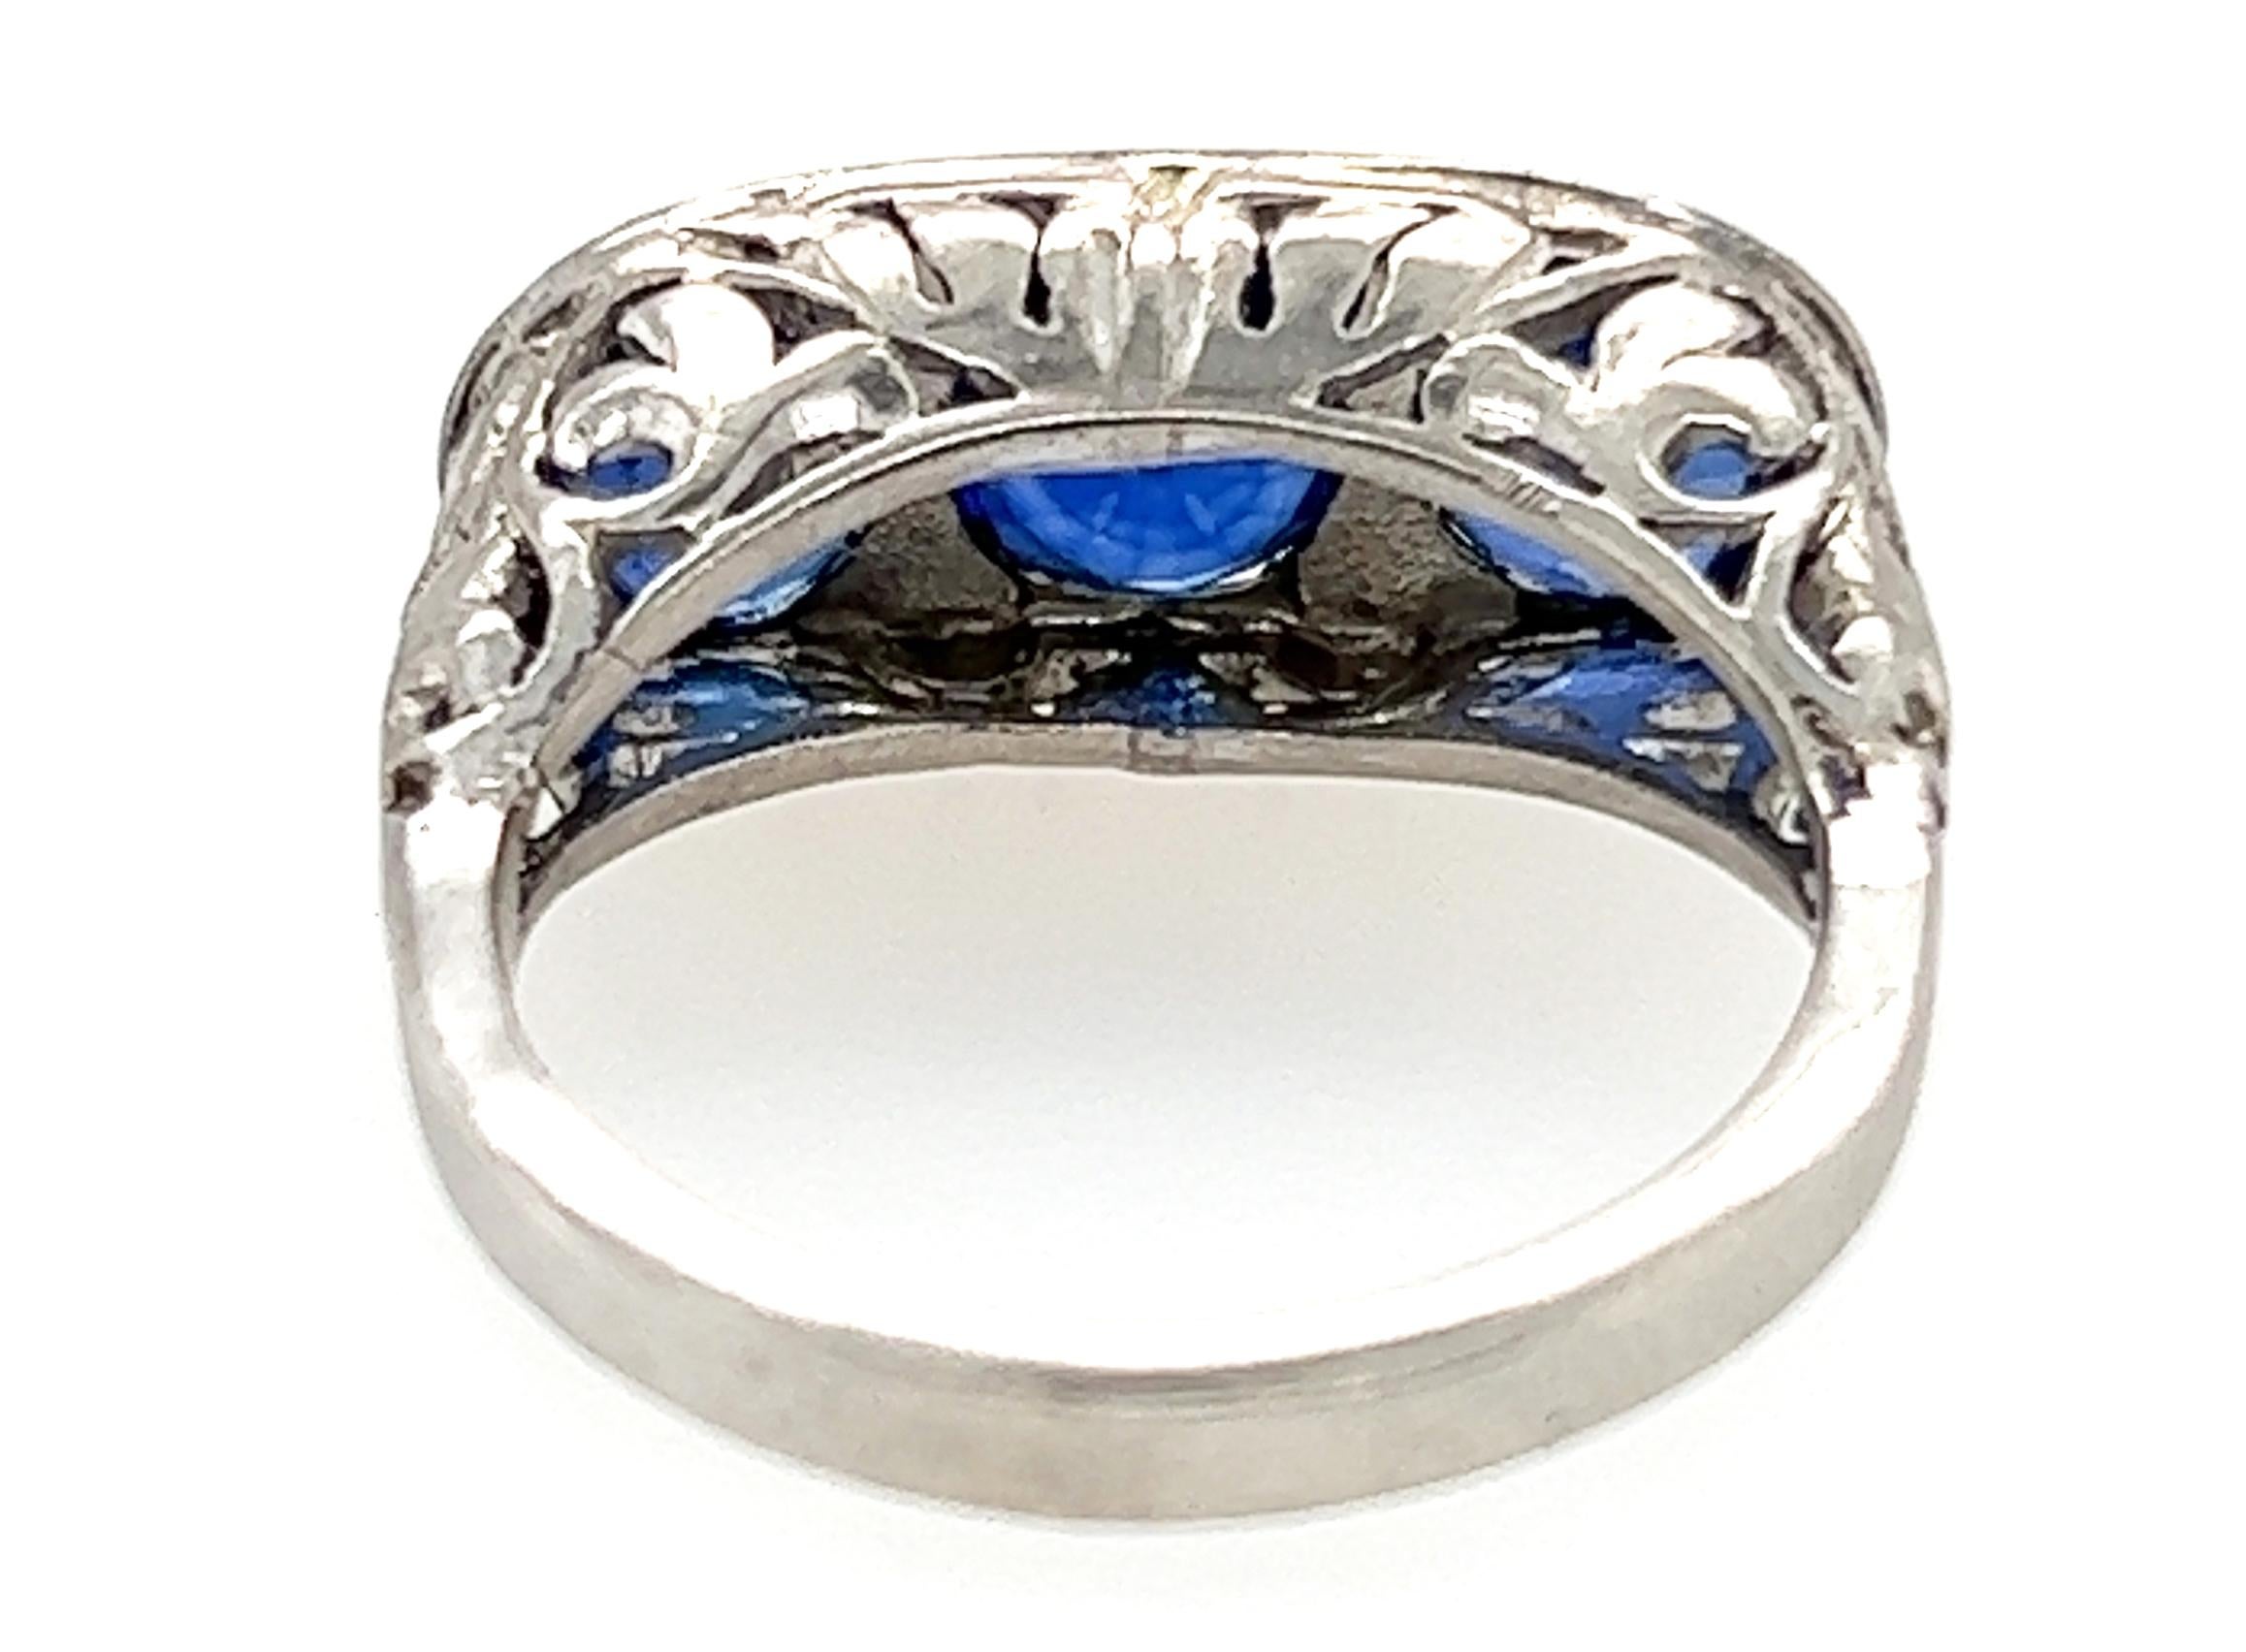 Art Deco 3 Stone Sapphire Ring 3.51 Carat Round Cut Original 1920s Platinum For Sale 3